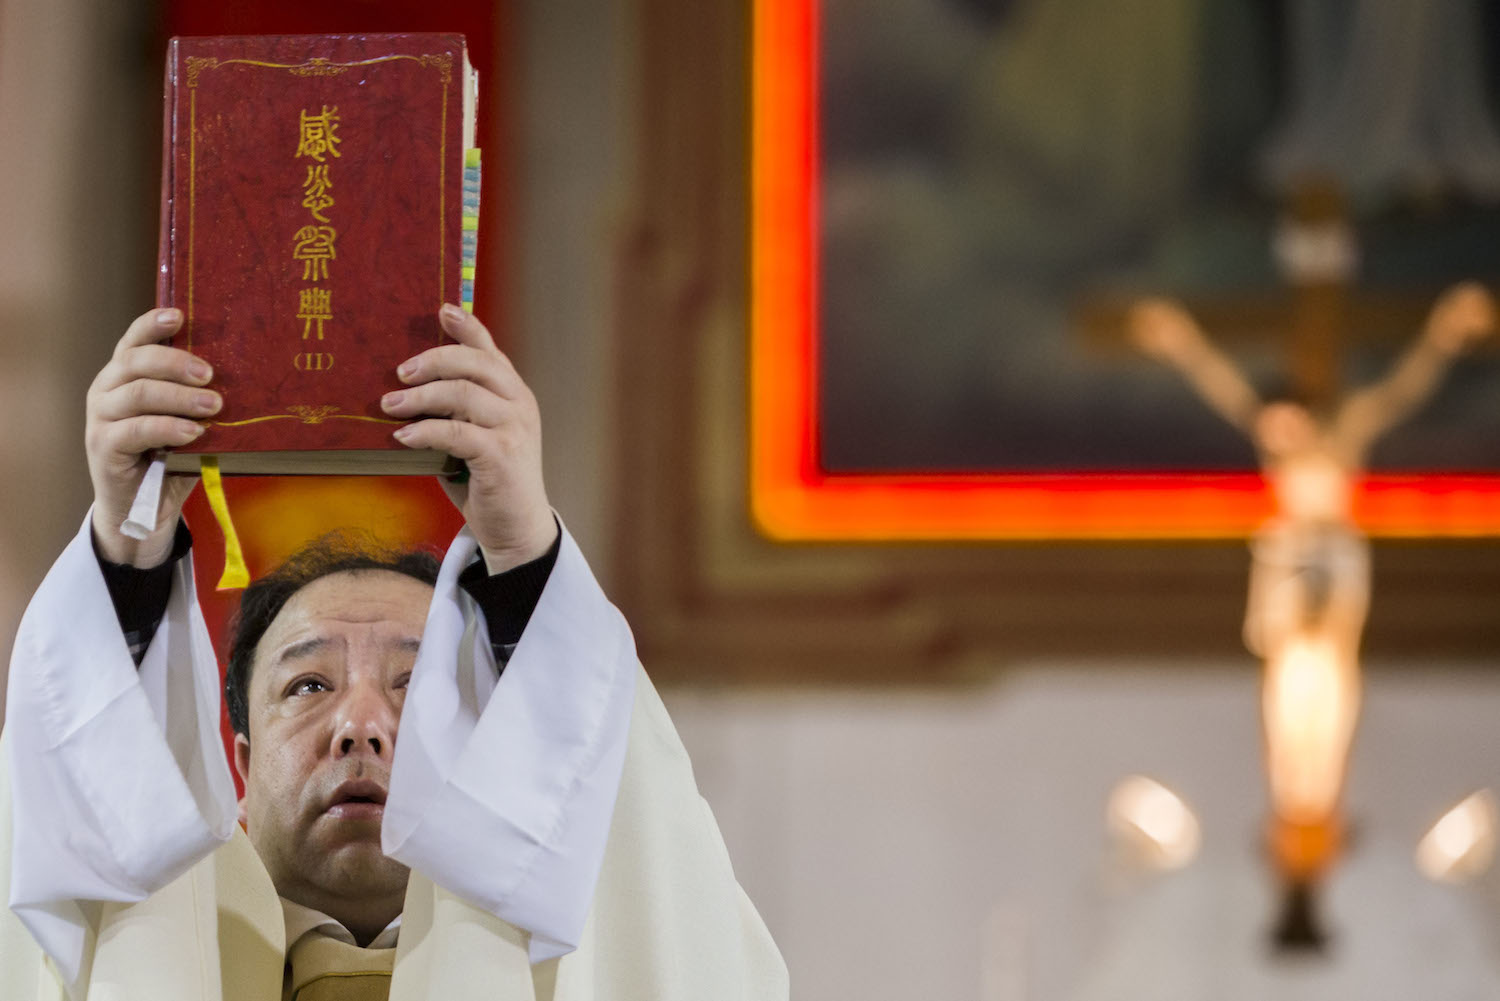 ચીનમાં ખ્રિસ્તીઓએ મૃત સામ્યવાદી સૈનિકો માટે પ્રાર્થના કરવાની ફરજ પડી